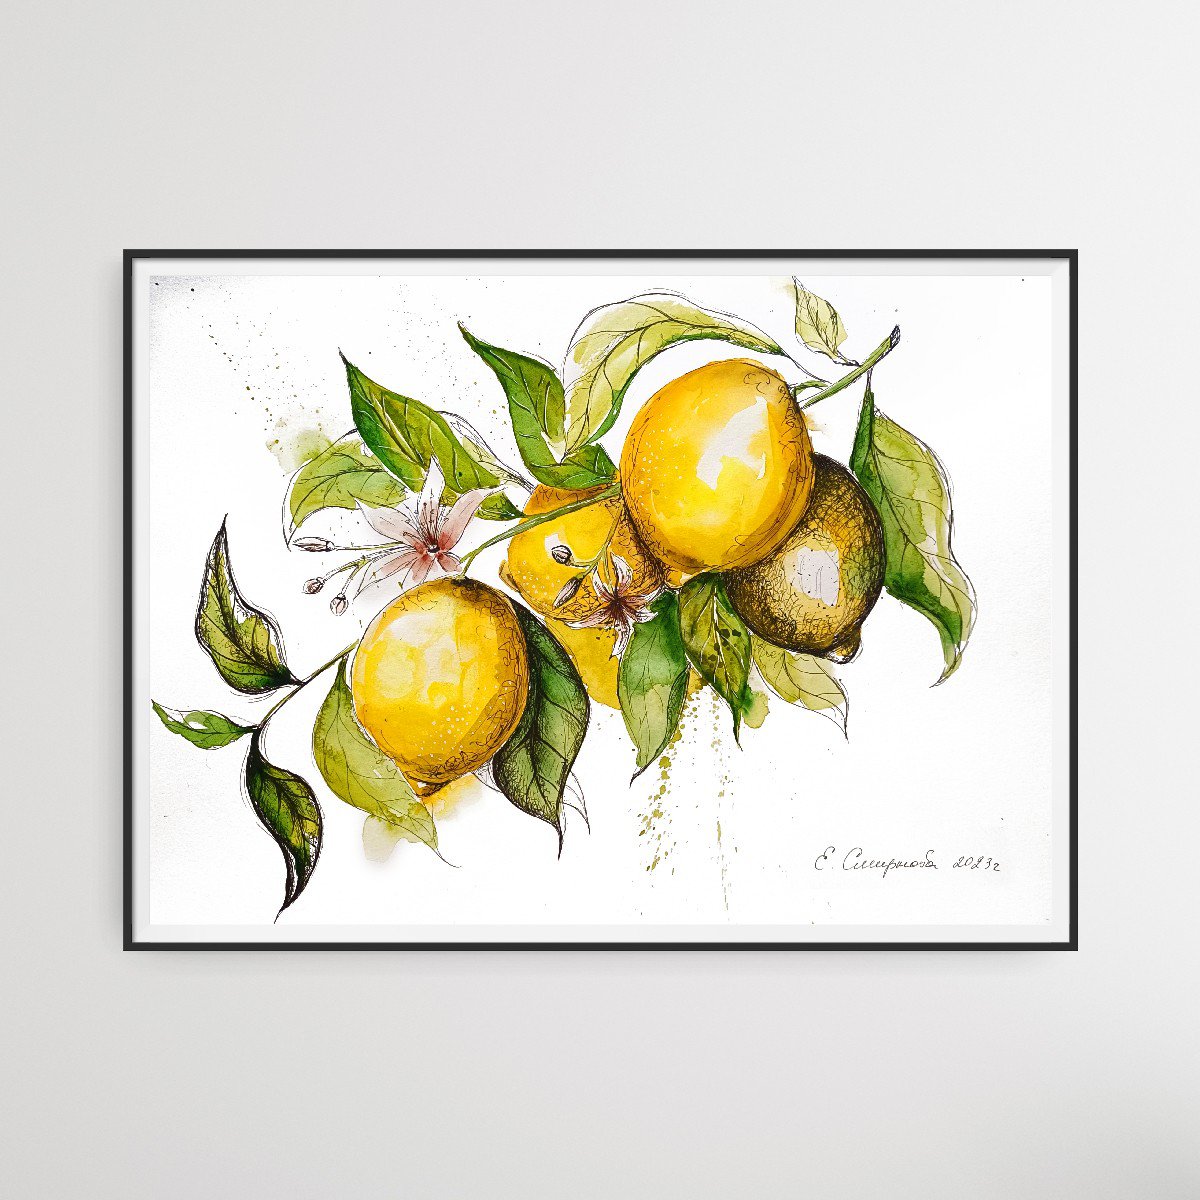 Lemons by Evgenia Smirnova